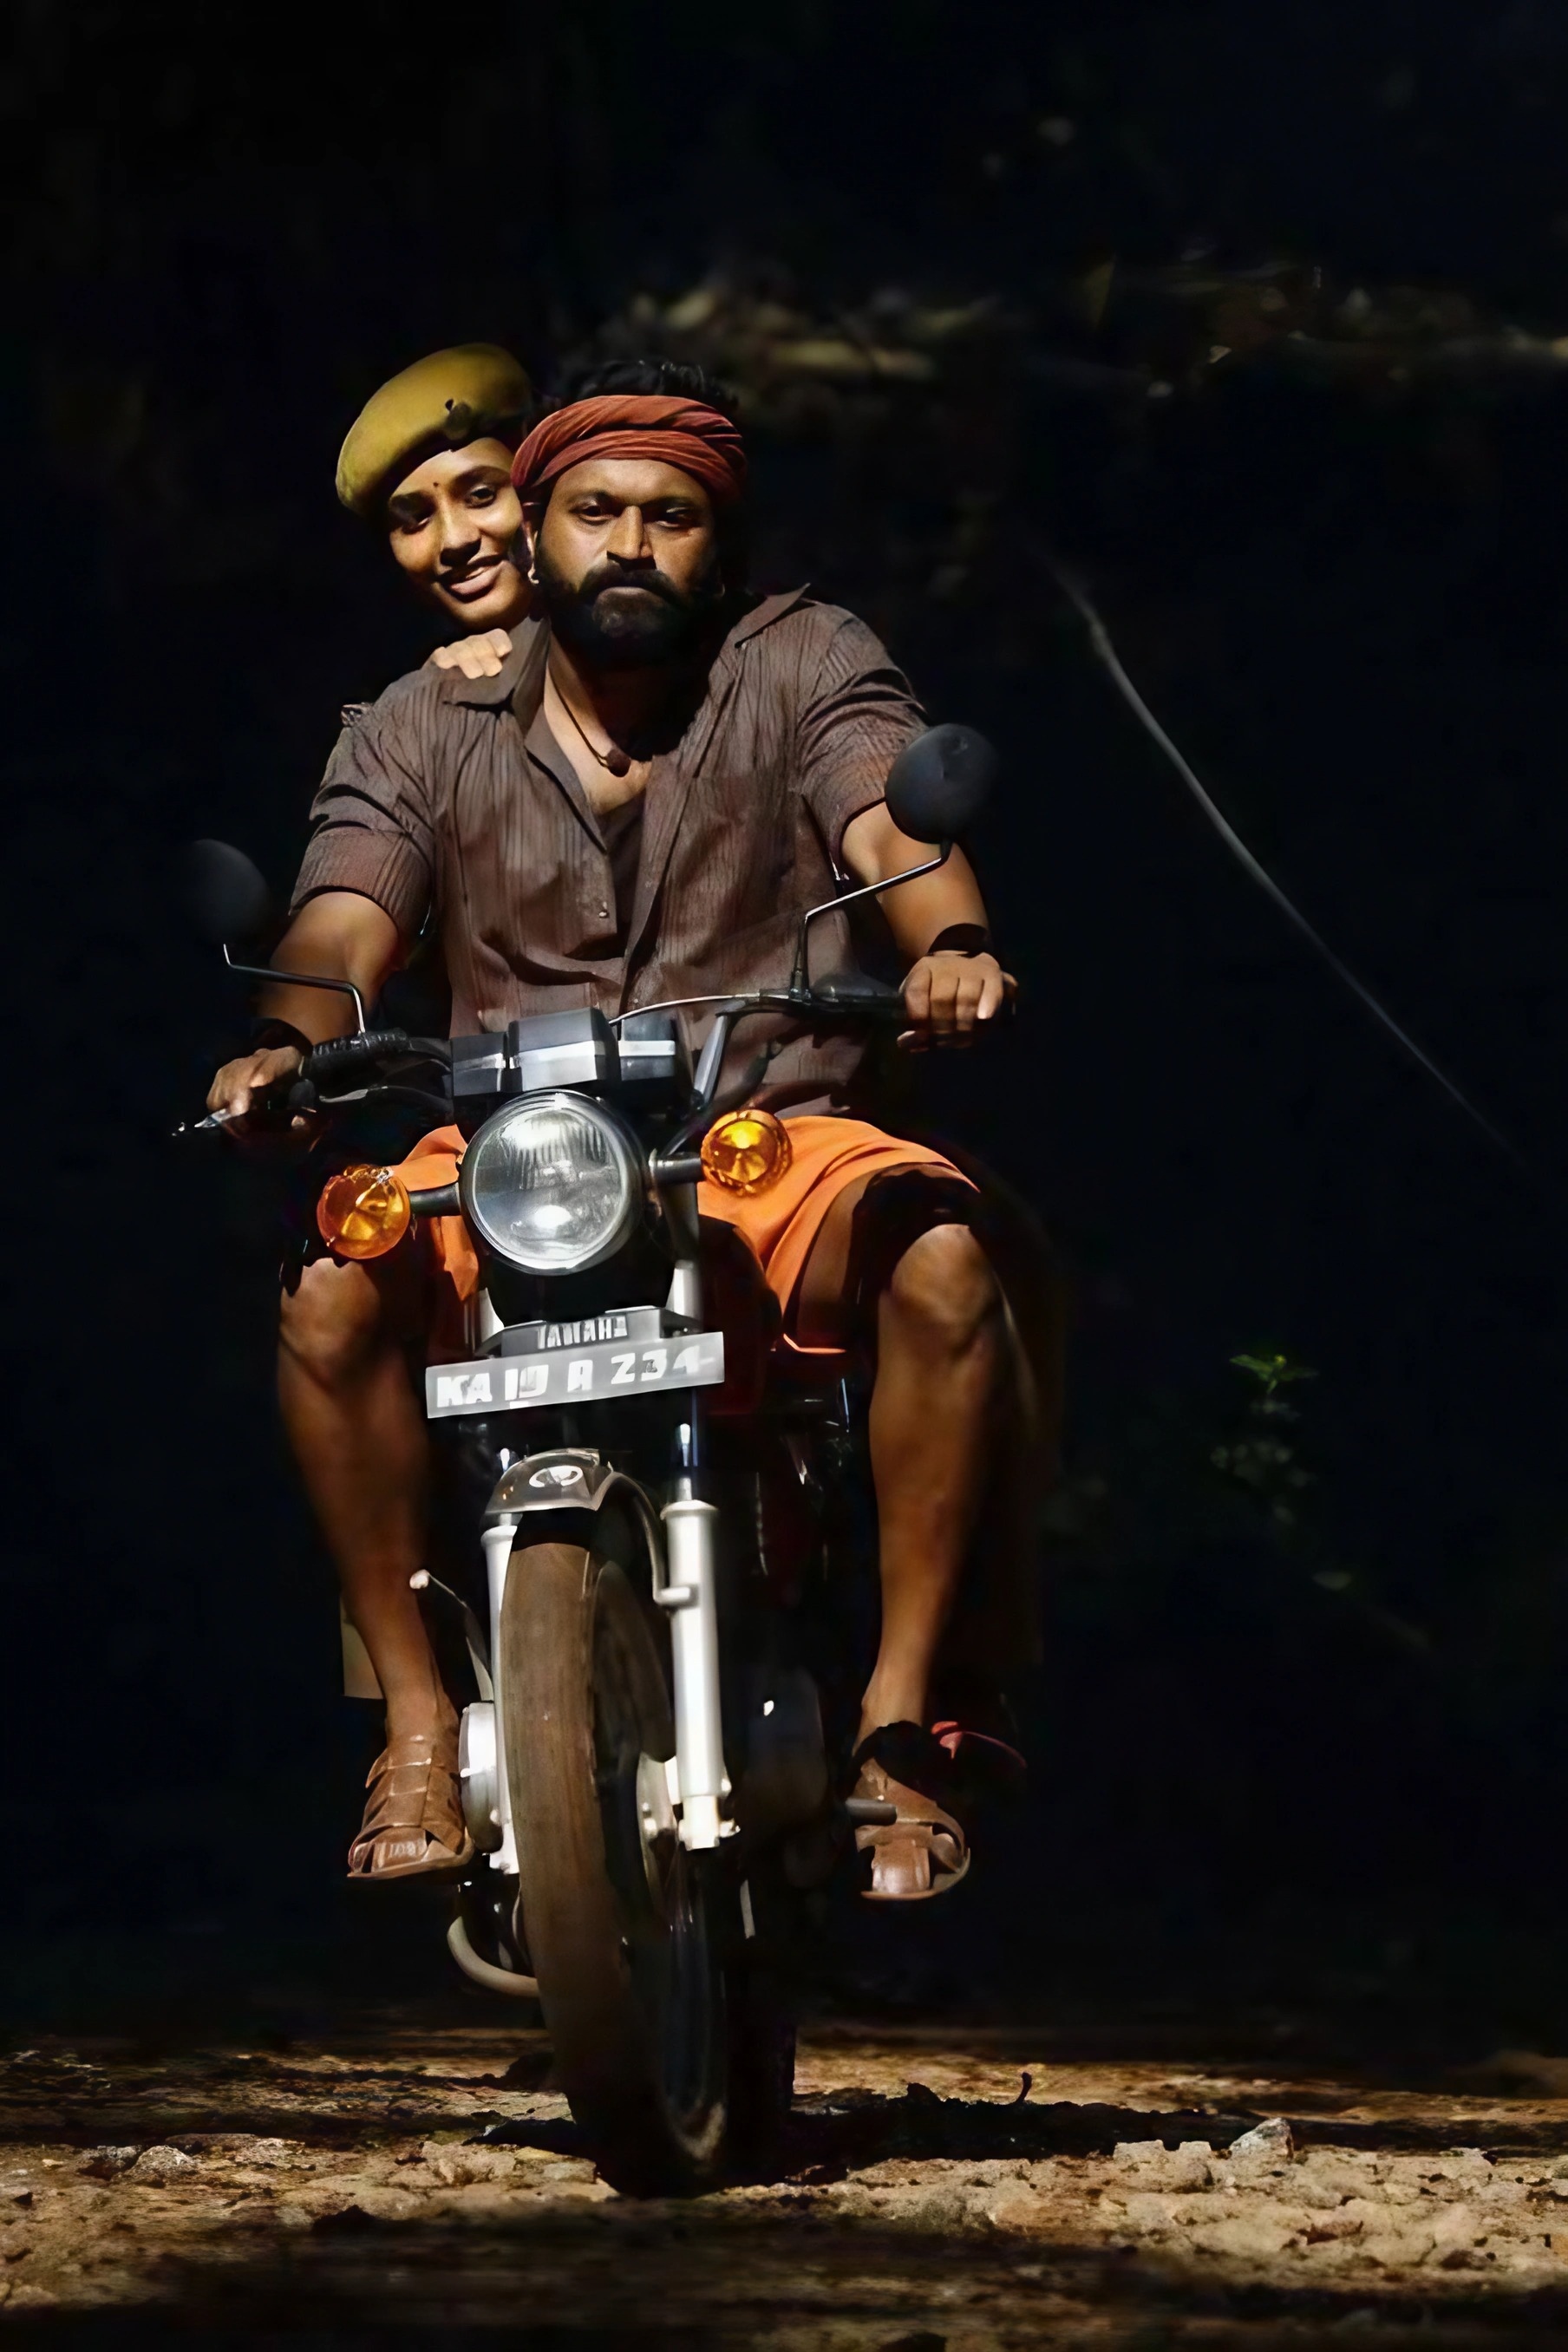 Kantara Movie - Rishab Shetty Riding Bike